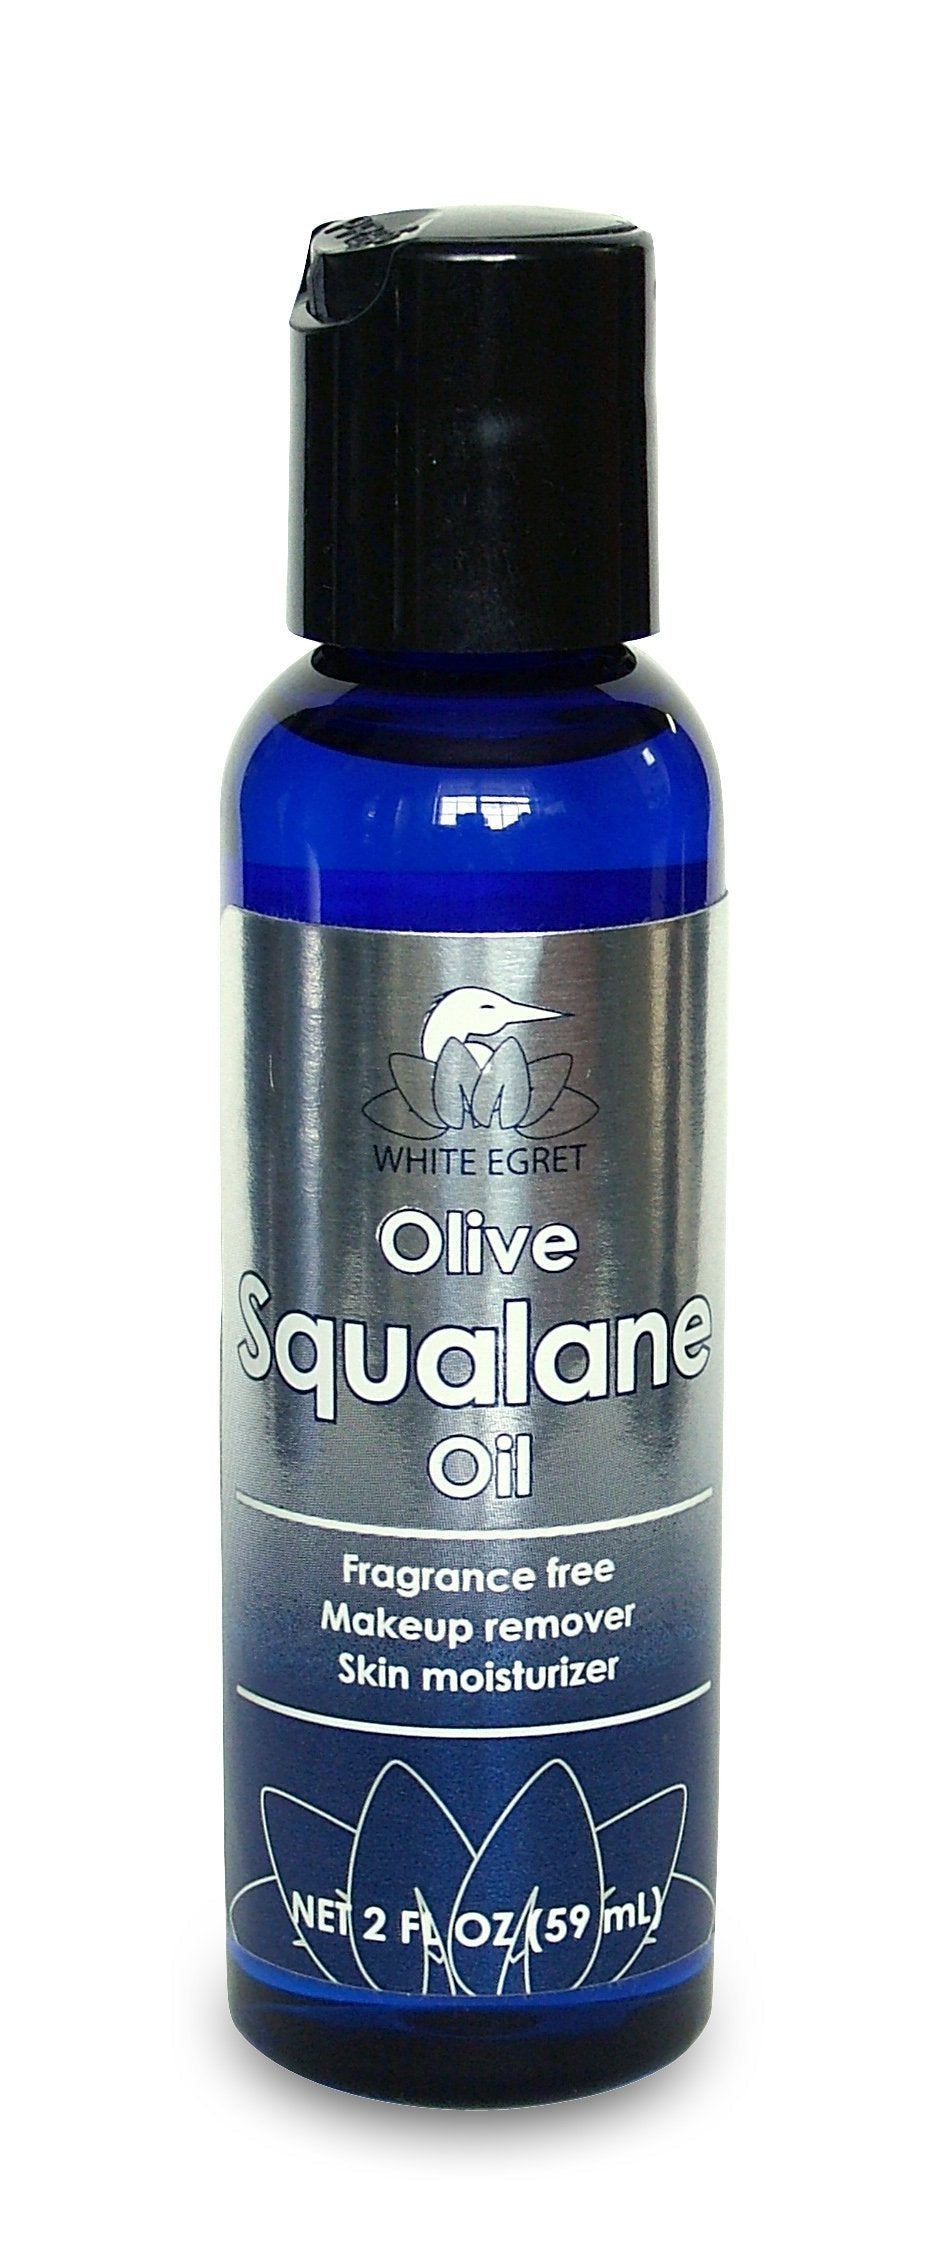 White Egret Olive Squalane Oil, 2-Ounce - BeesActive Australia